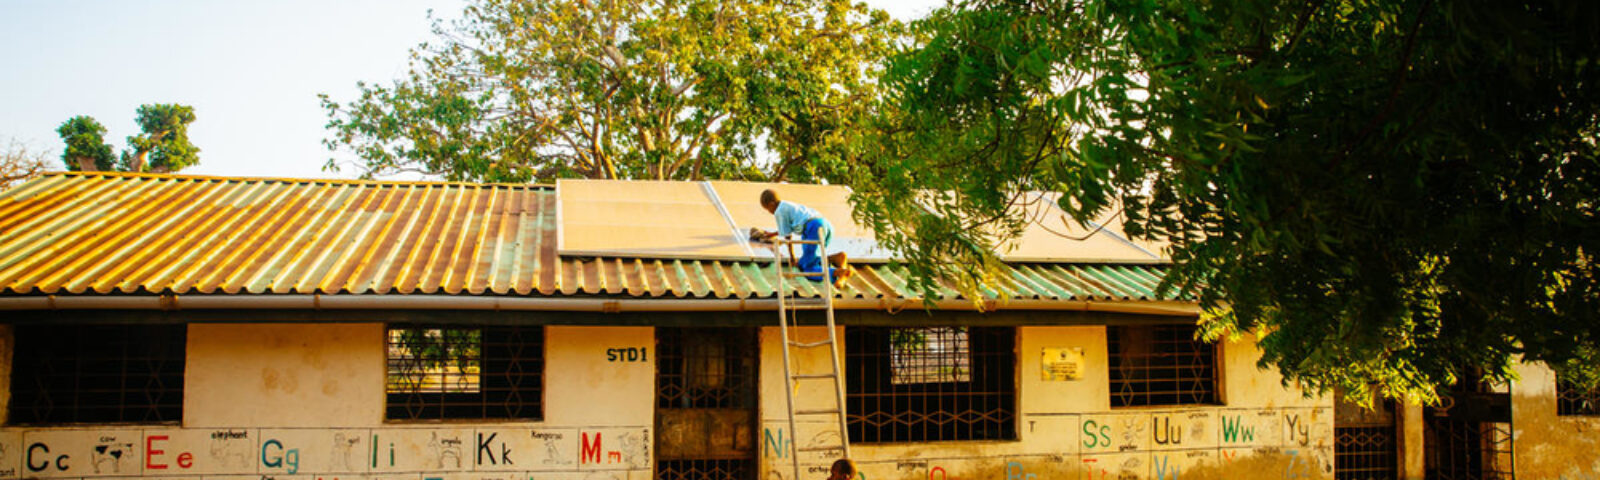 En gutt bruker stige til å klatre opp for å rengjøre solcellepanelet på skolens tak.